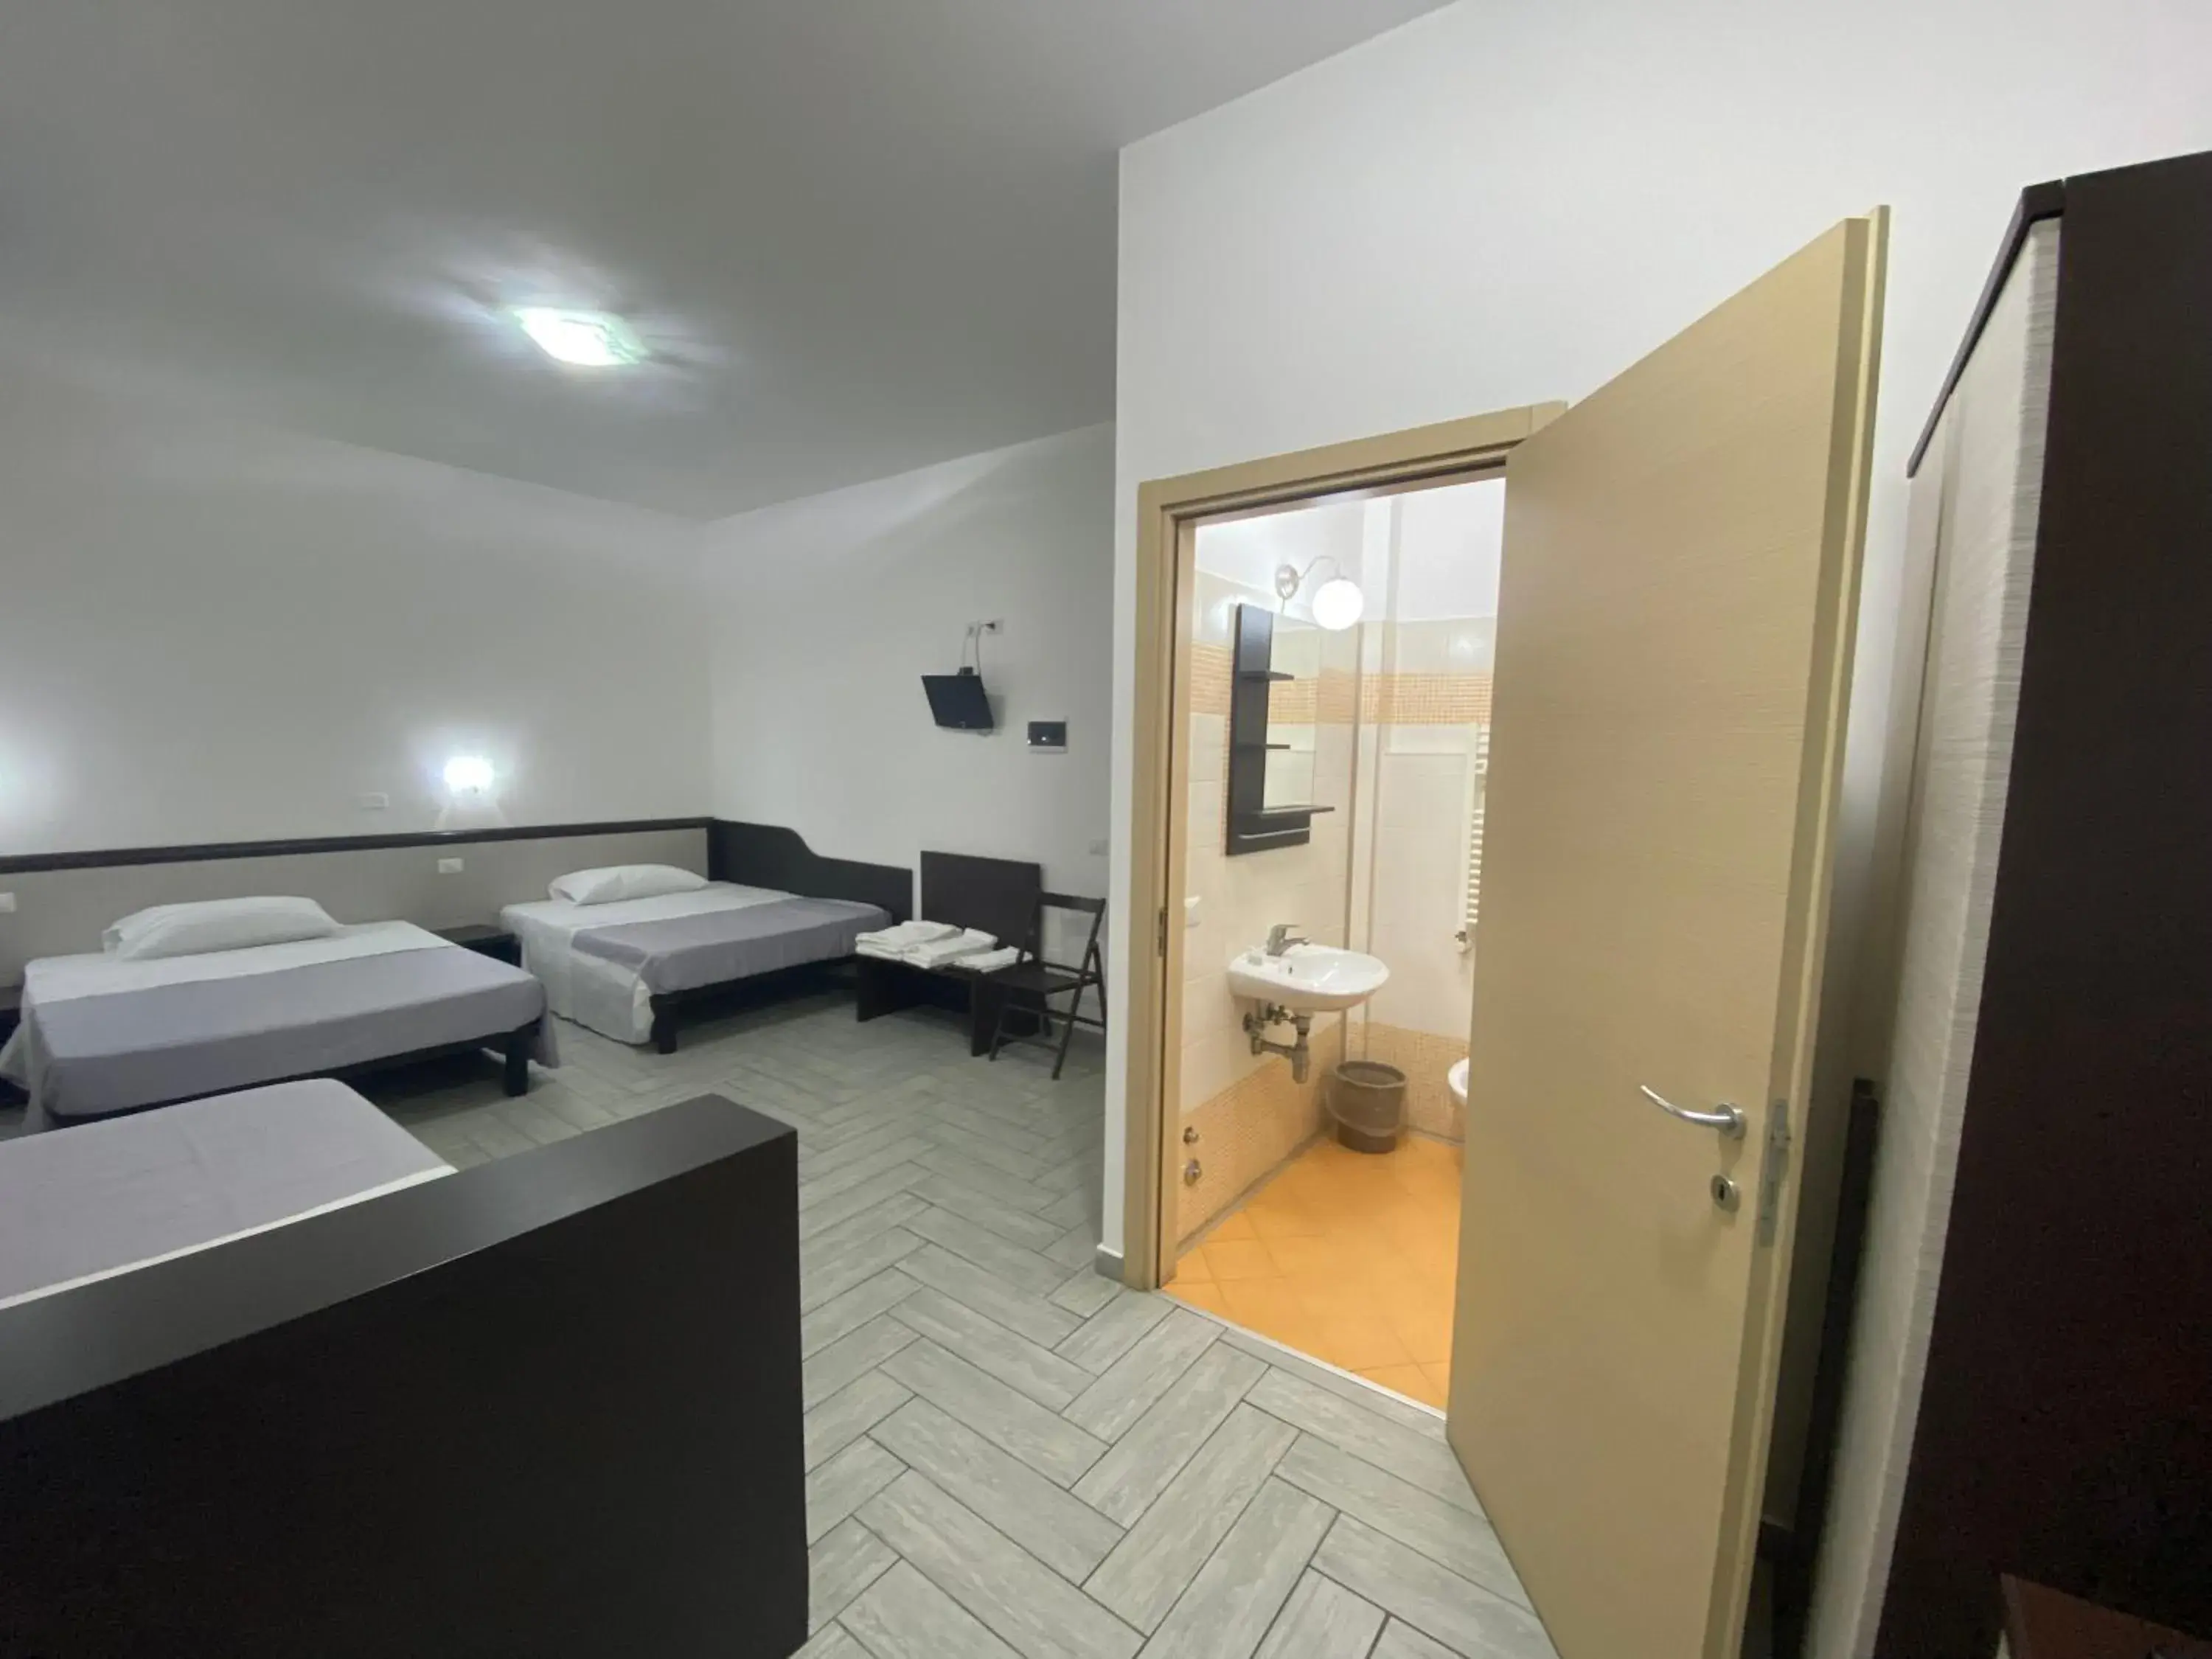 Bedroom, Bathroom in Hotel Poma